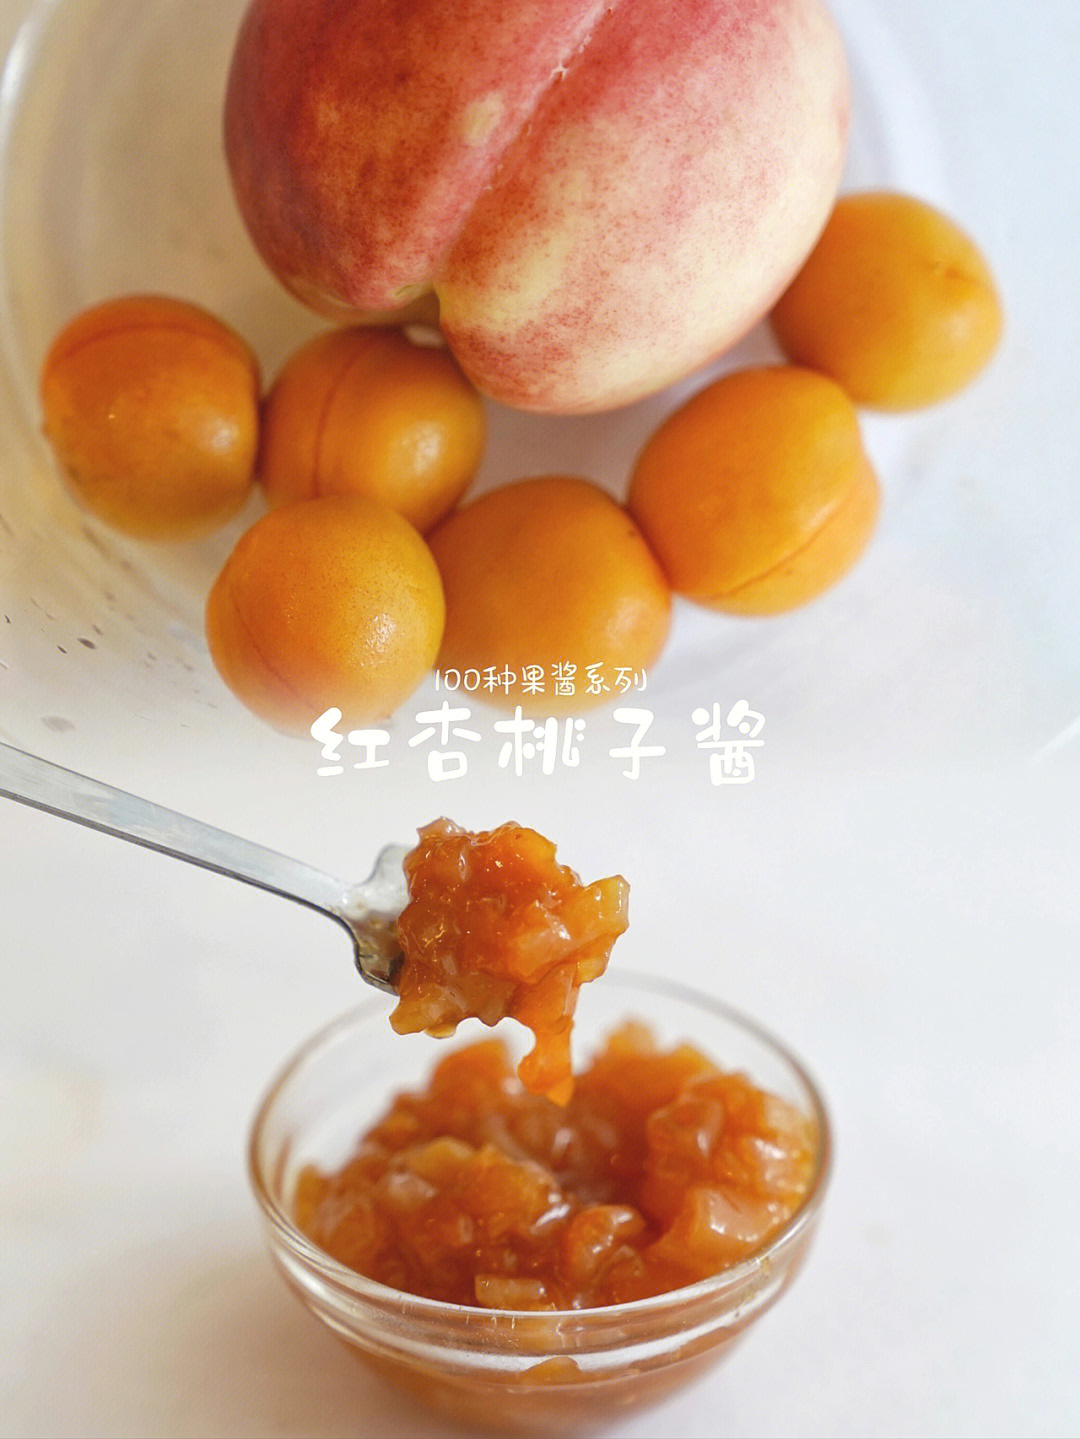 桃子酱cv图片